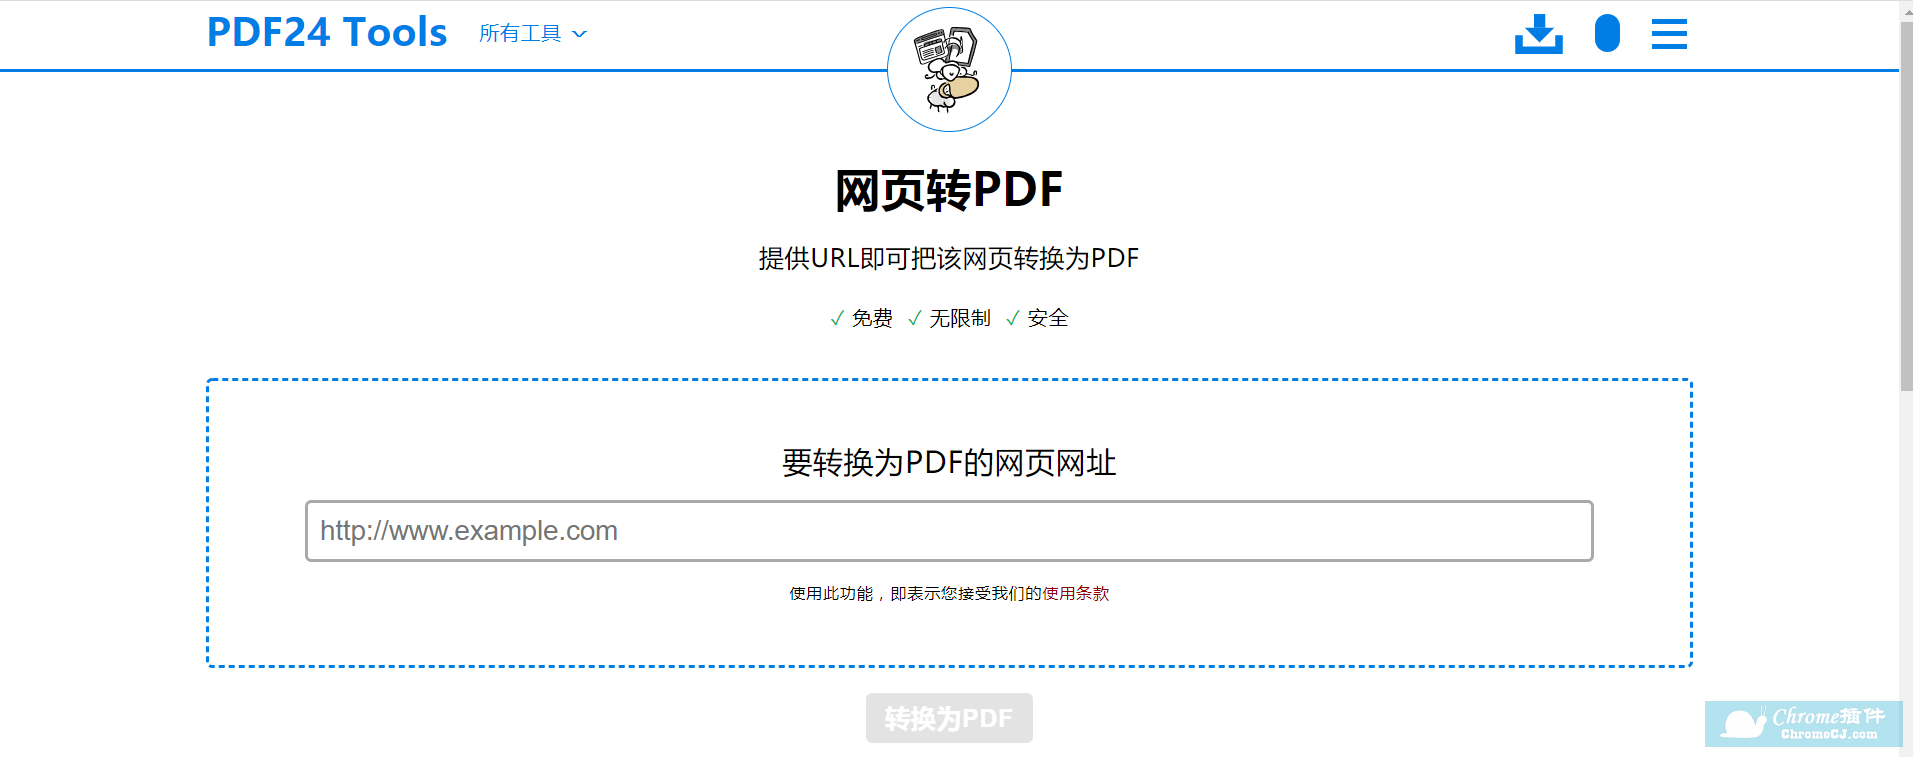 PDF24 Tools PDF 工具使用方法